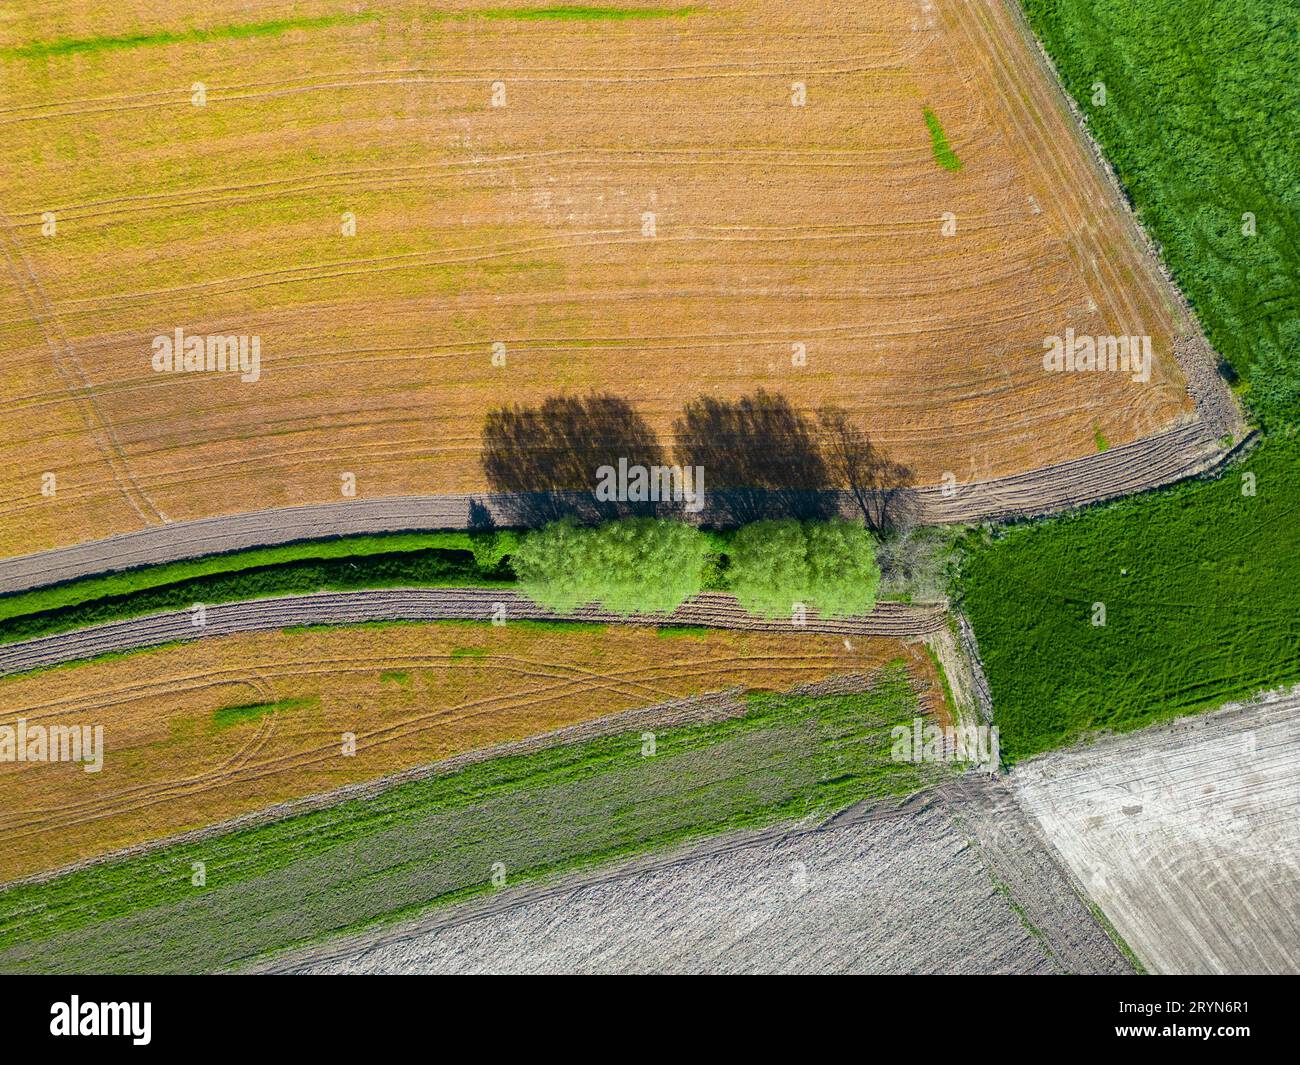 Vista a volo d'uccello dell'area agricola astratta e dei verdi campi ondulati nelle giornate di sole. Fotografia aerea, scatto con drone dall'alto. Essere Foto Stock